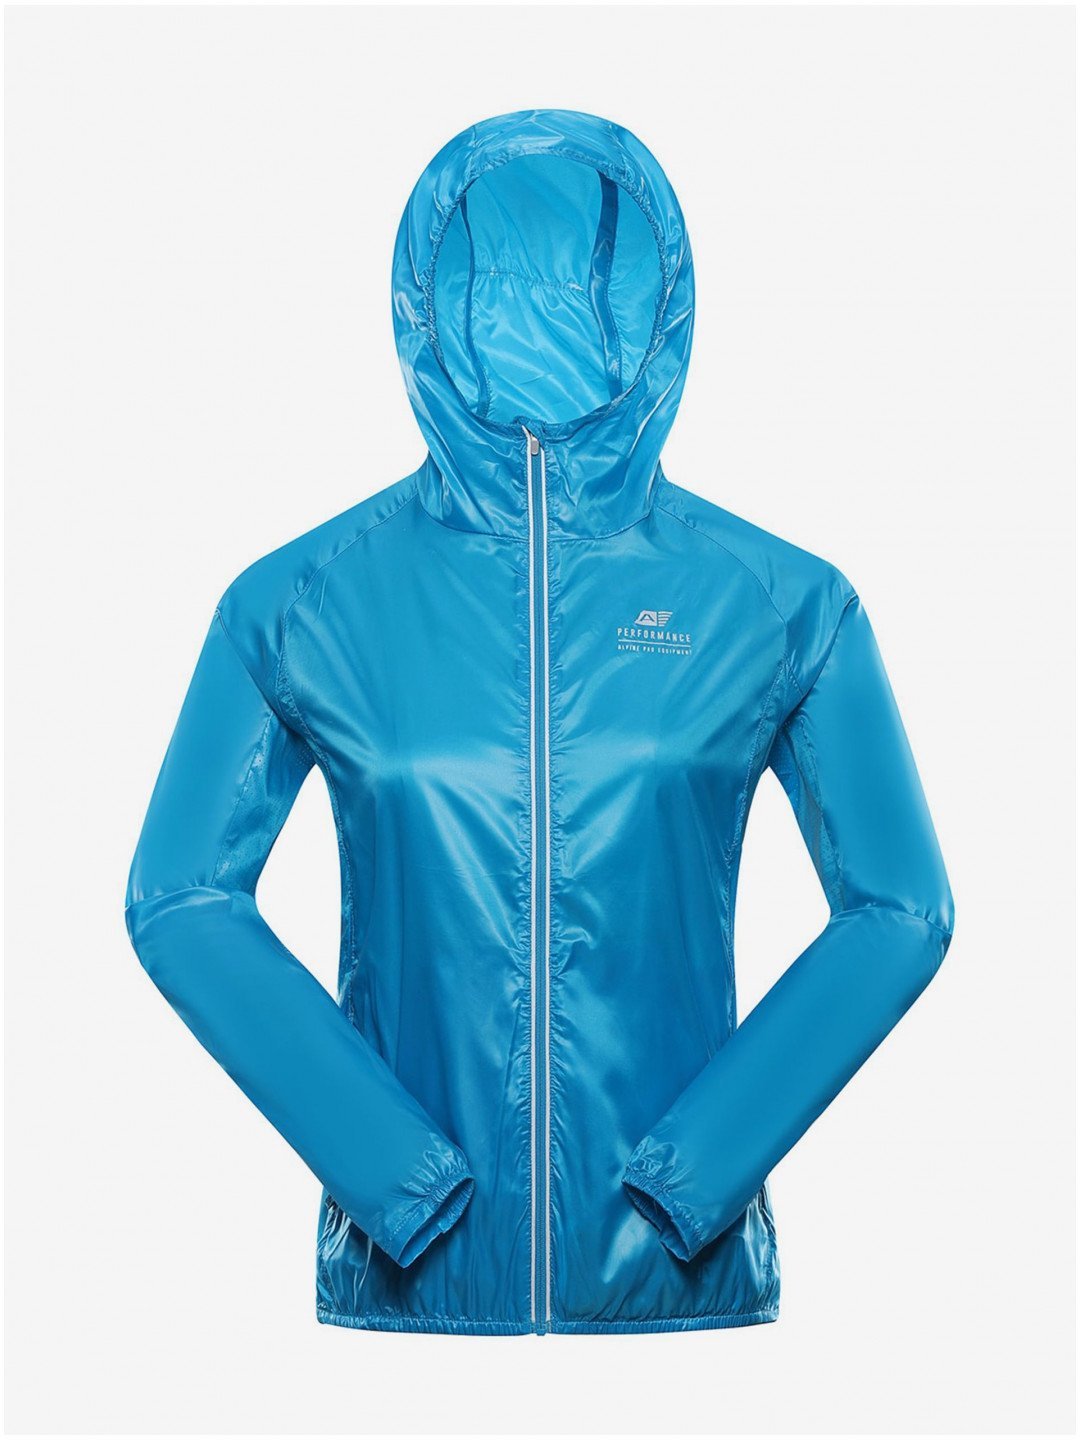 Dámská ultralehká bunda s impregnací ALPINE PRO BIKA modrá